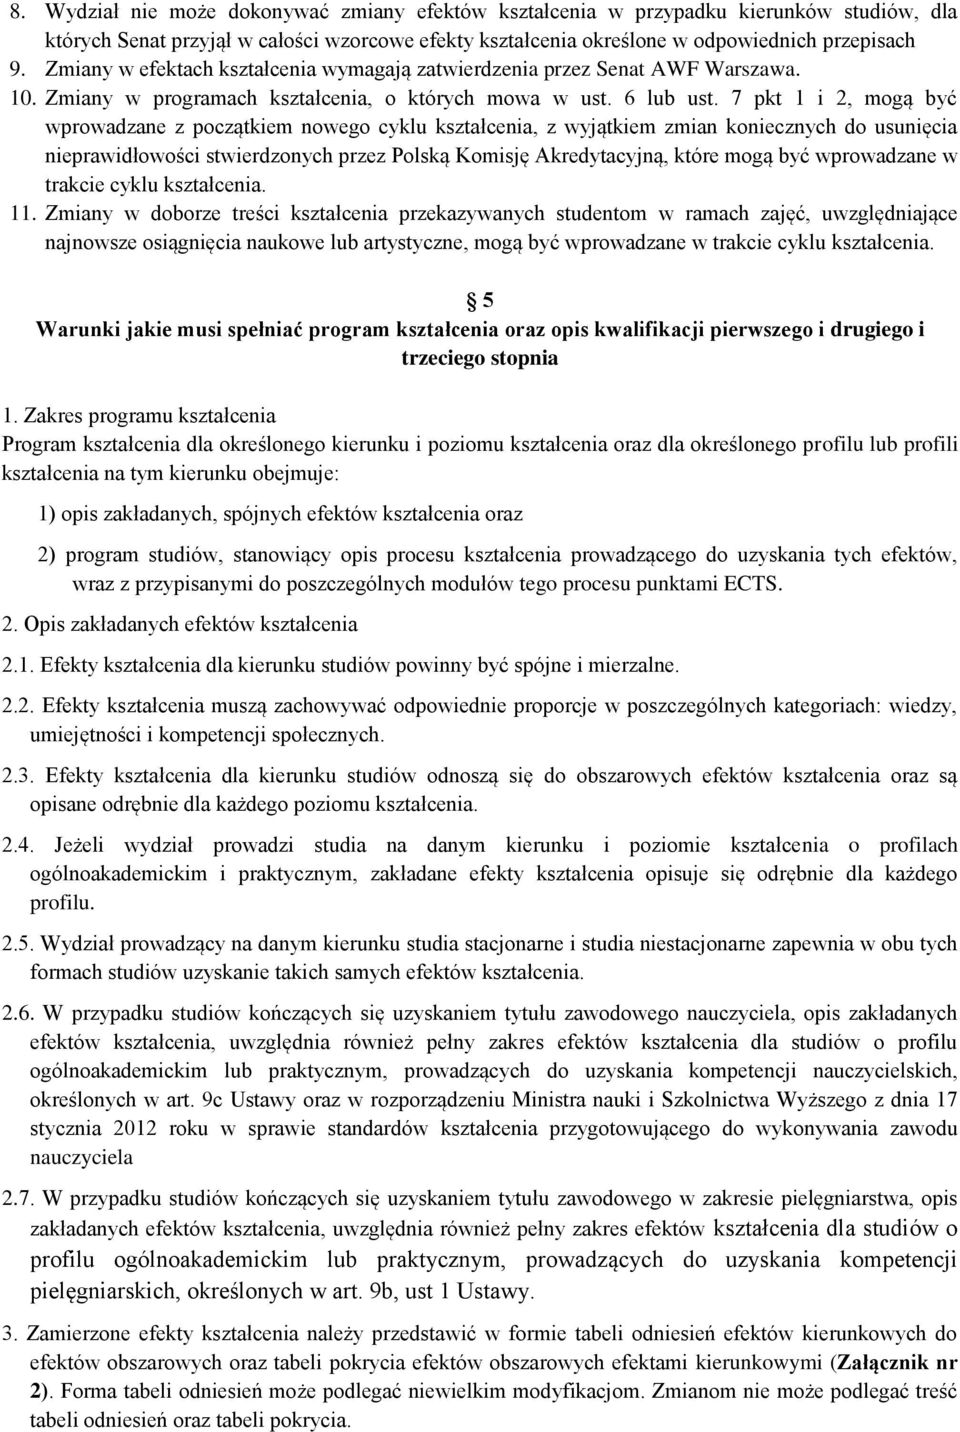 7 pkt 1 i 2, mogą być wprowadzane z początkiem nowego cyklu kształcenia, z wyjątkiem zmian koniecznych do usunięcia nieprawidłowości stwierdzonych przez Polską Komisję Akredytacyjną, które mogą być